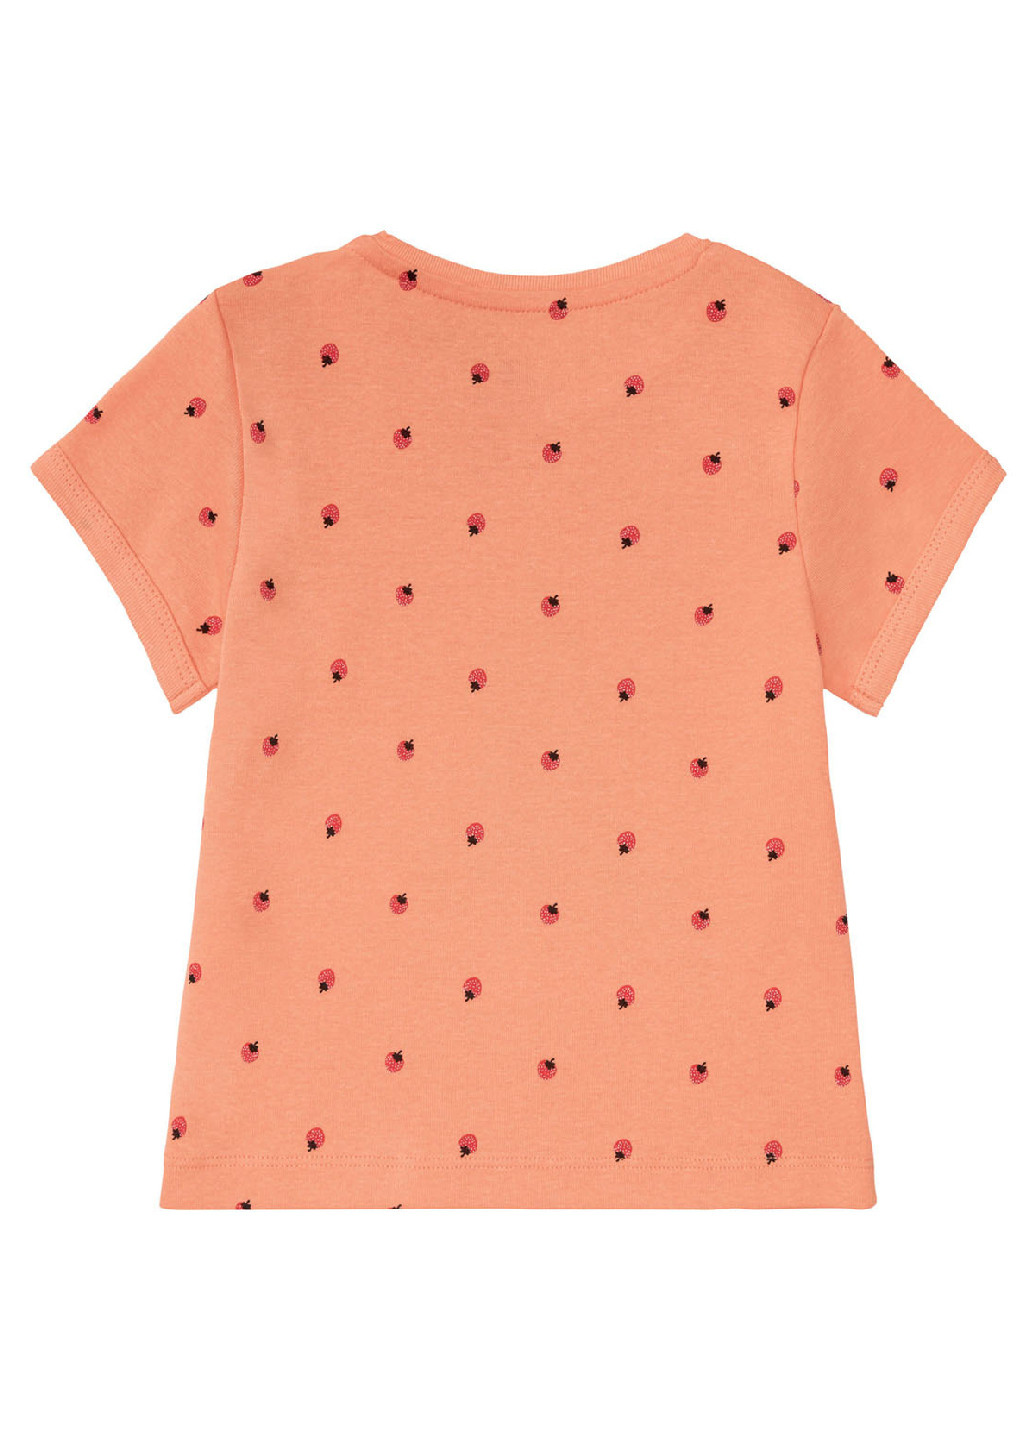 Персиковый комплект (футболка, шорты) Lupilu